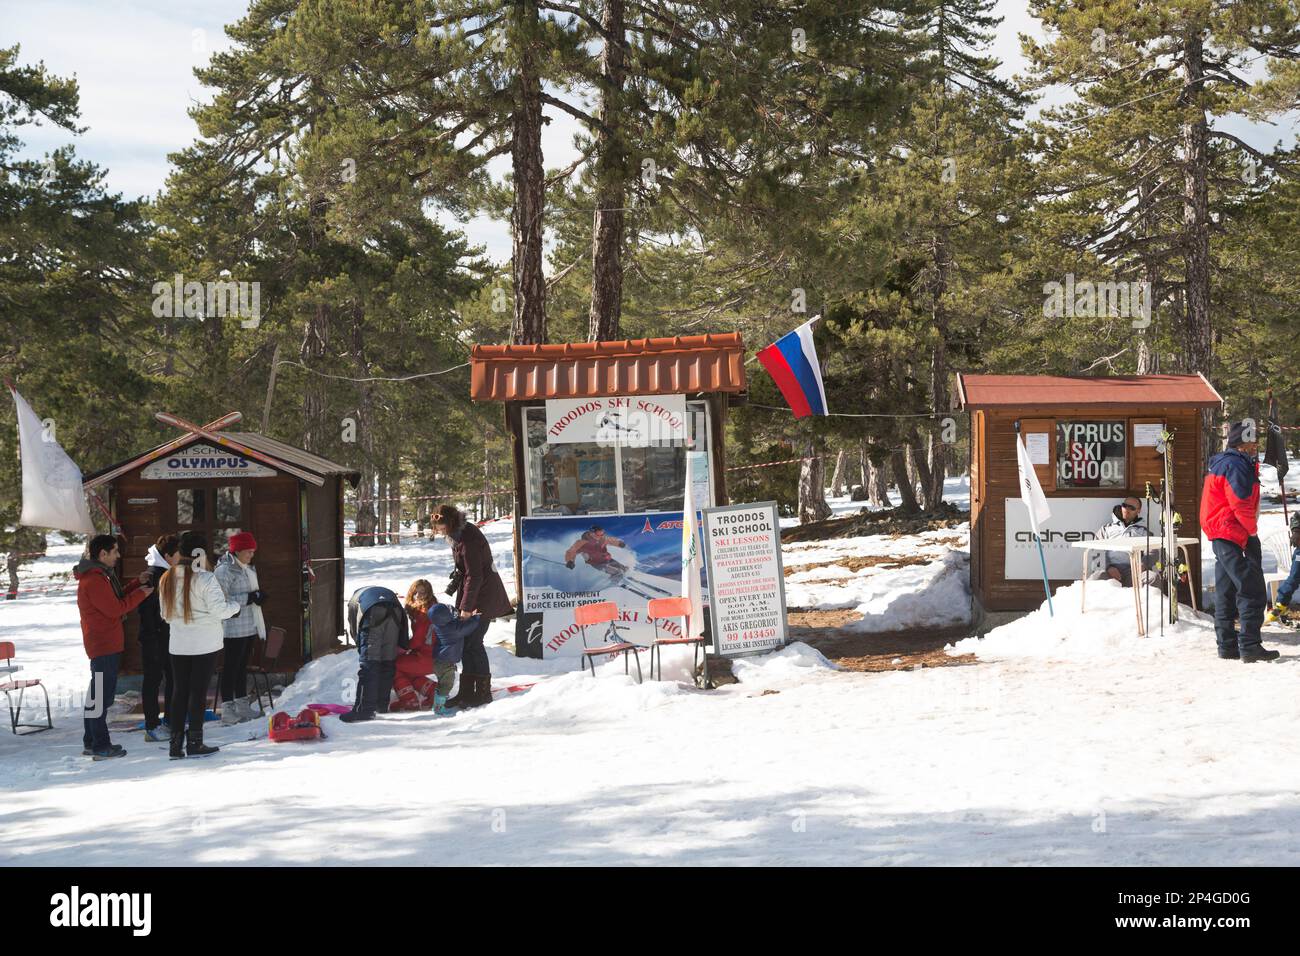 Cyprus, Troodos mountains, ski school kiosks. Stock Photo